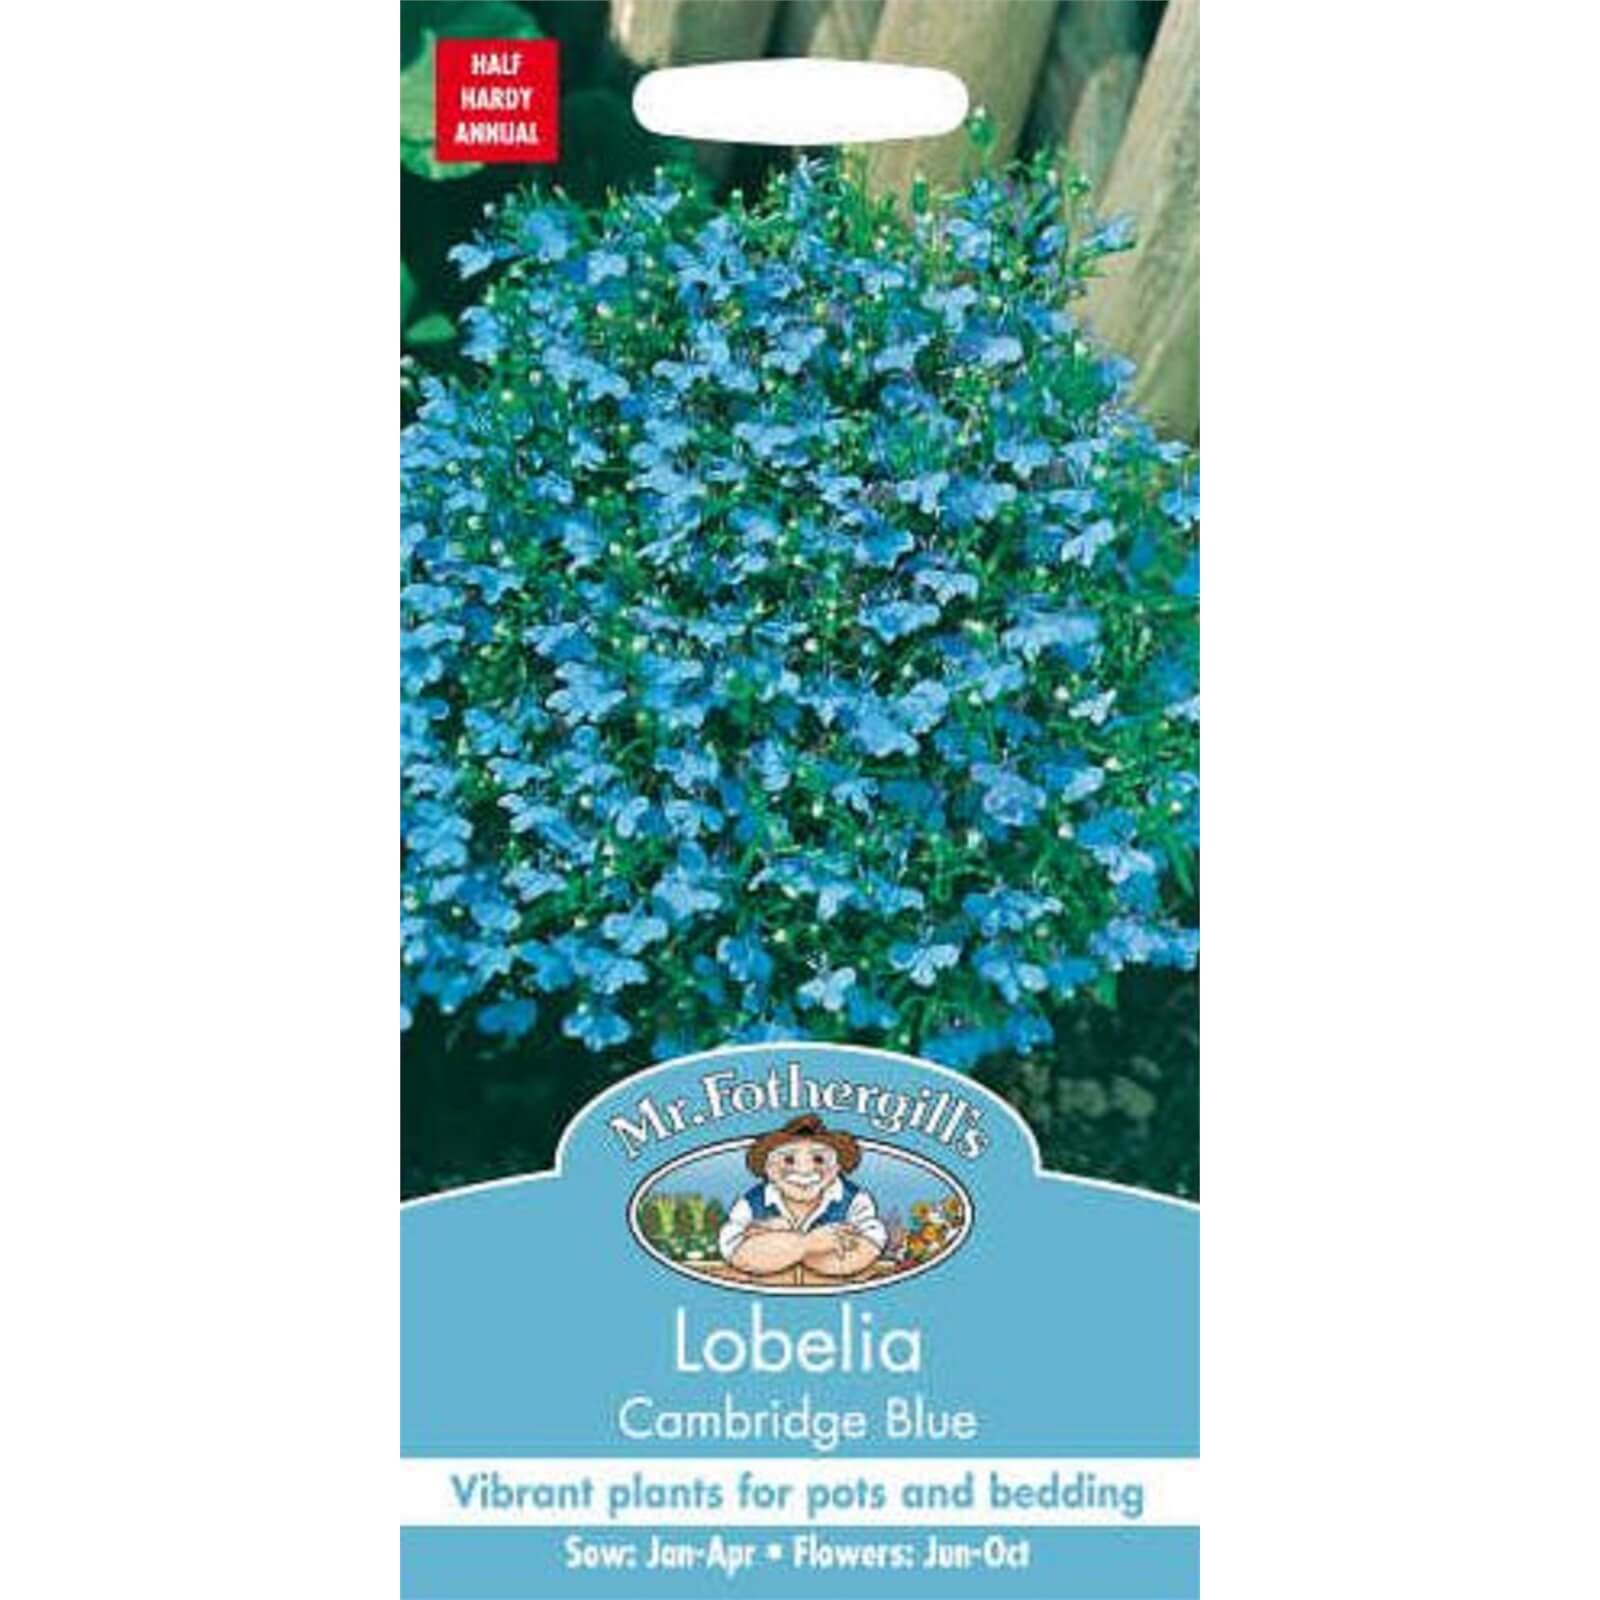 Mr. Fothergill's Lobelia Cambridge Blue Seeds